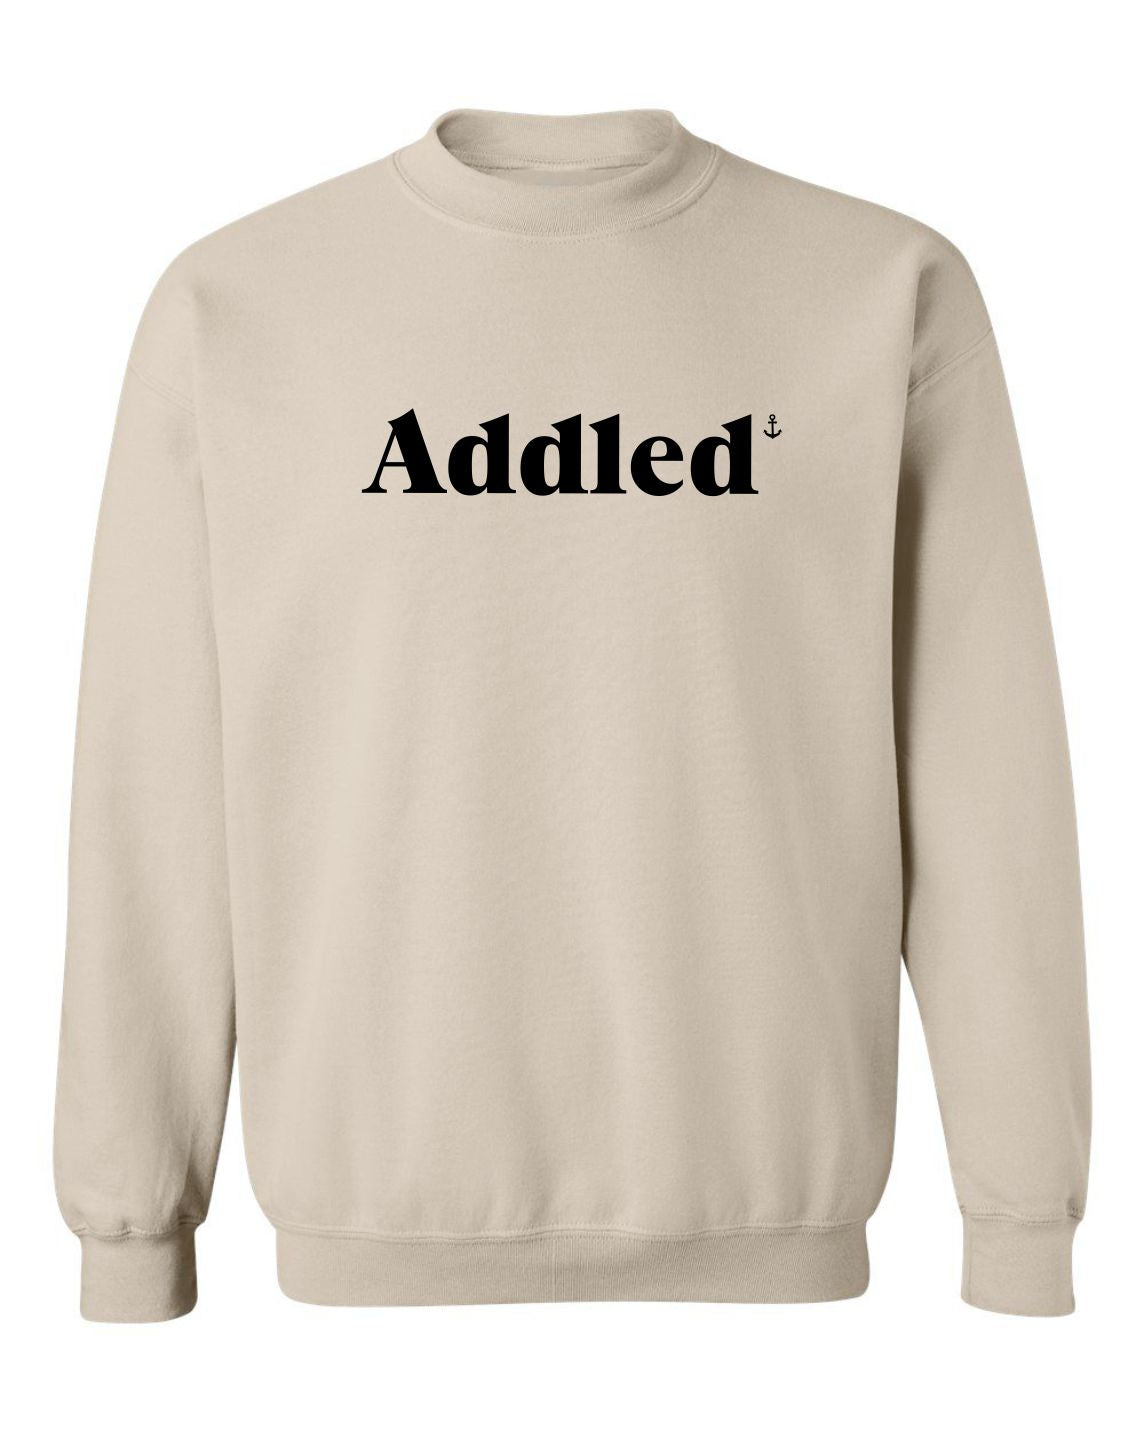 Addled Unisex Crewneck Sweatshirt – SaltwaterDesigns NL